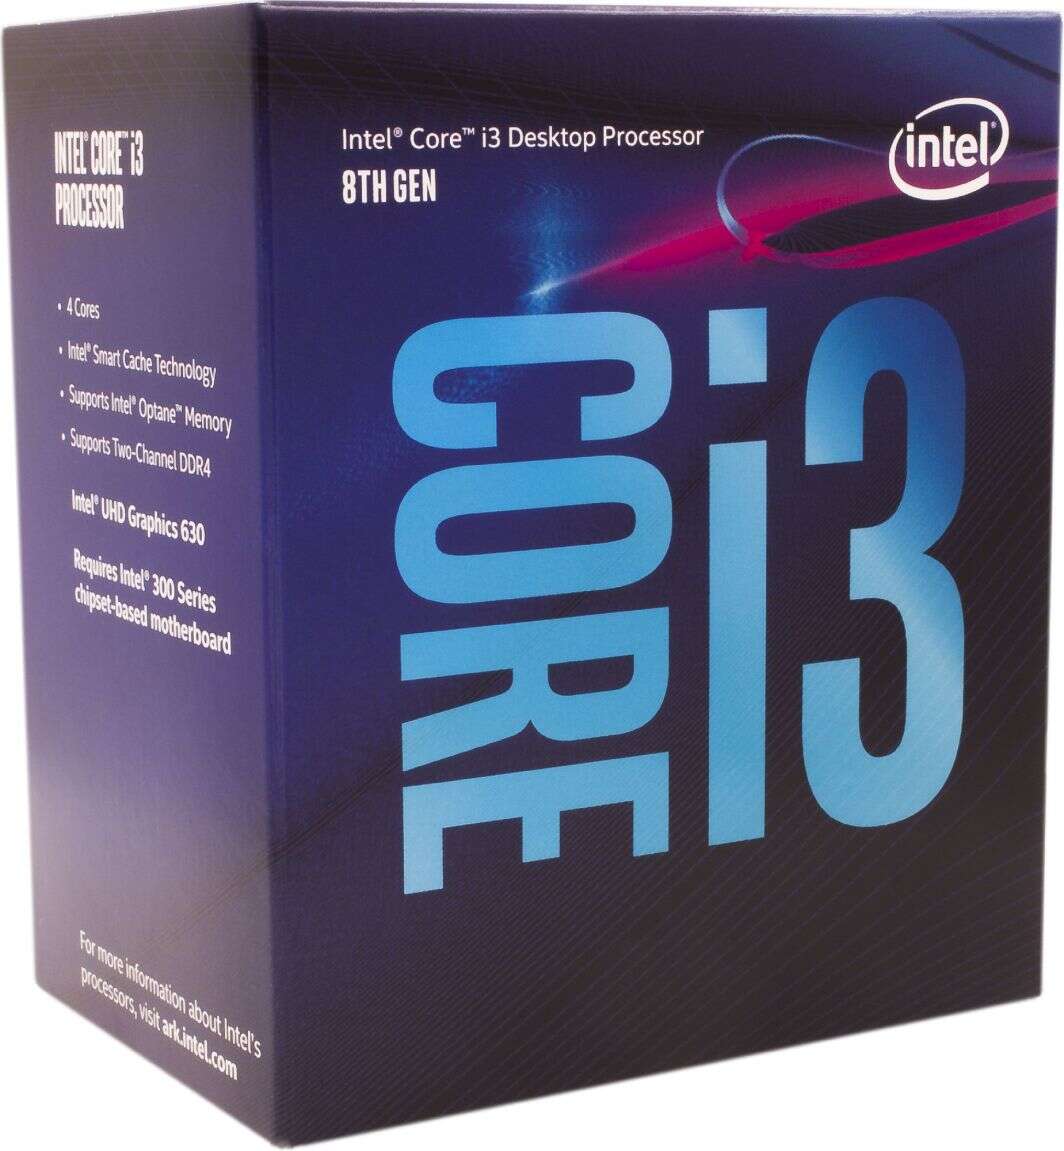 test Intel Core i3-8350K, recenzja Intel Core i3-8350K, review Intel Core i3-8350K, opinia Intel Core i3-8350K, cena Intel Core i3-8350K, testy Intel Core i3-8350K, wydajność Intel Core i3-8350K, test 8350K, recenzja 8350K, review 8350K, opinia 8350K, testy 8350K, wydajność 8350K